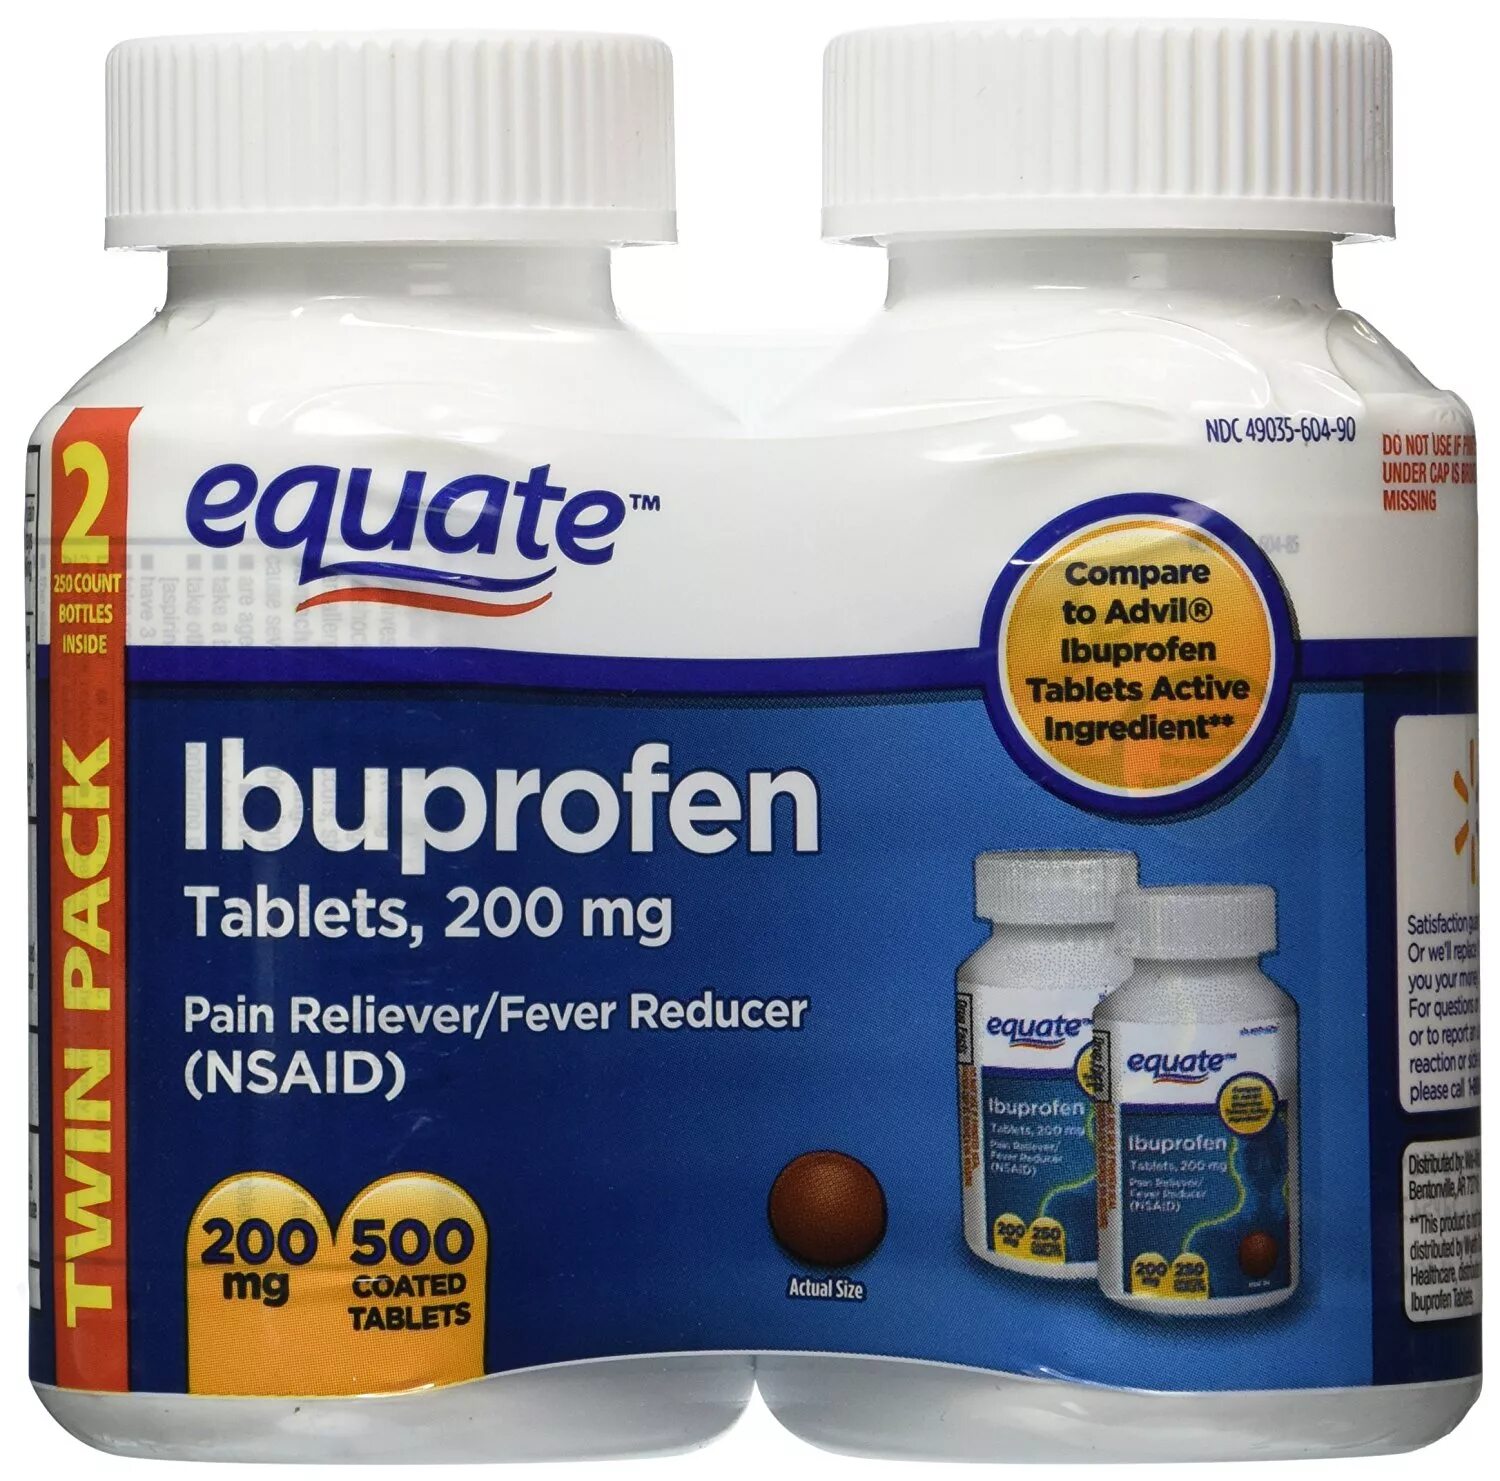 Equate Ibuprofen 200. Equate Ibuprofen Tablets, 200 MG, Twin Pack, 500 count. Equate equate Ibuprofen Tablets 200 MG. Ибупрофен equate 200 мг.